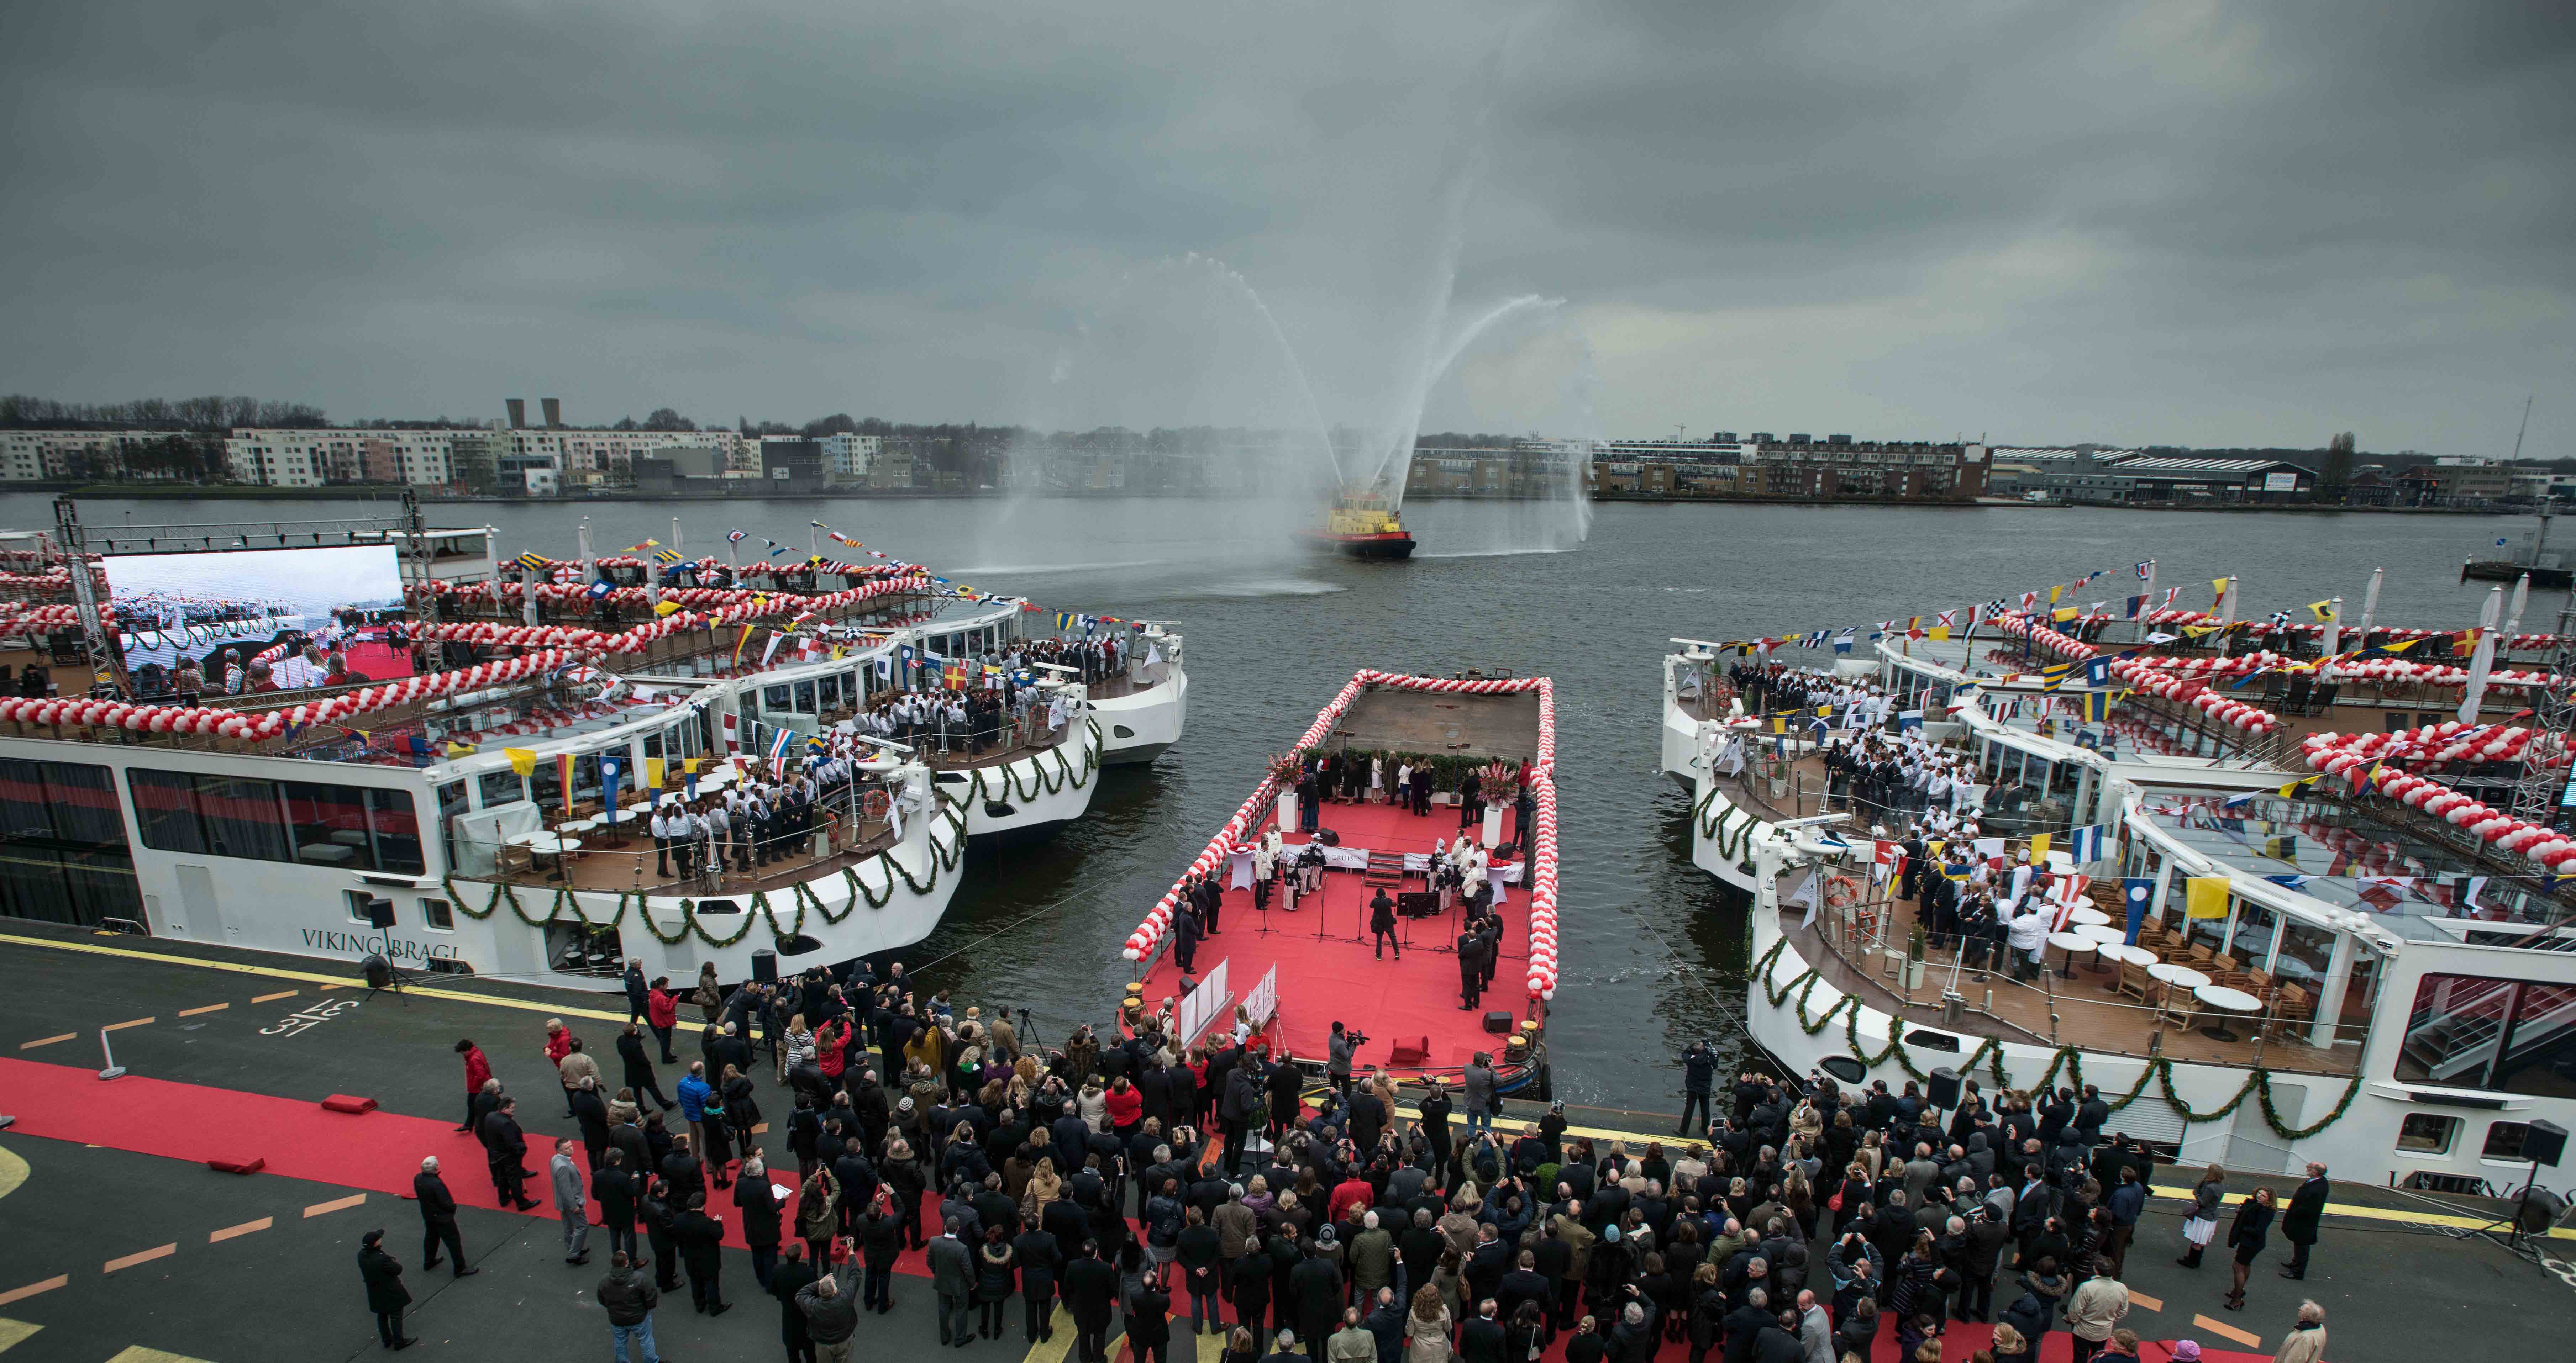 Amsterdam Viking River Cruises Go for Guinness World Record